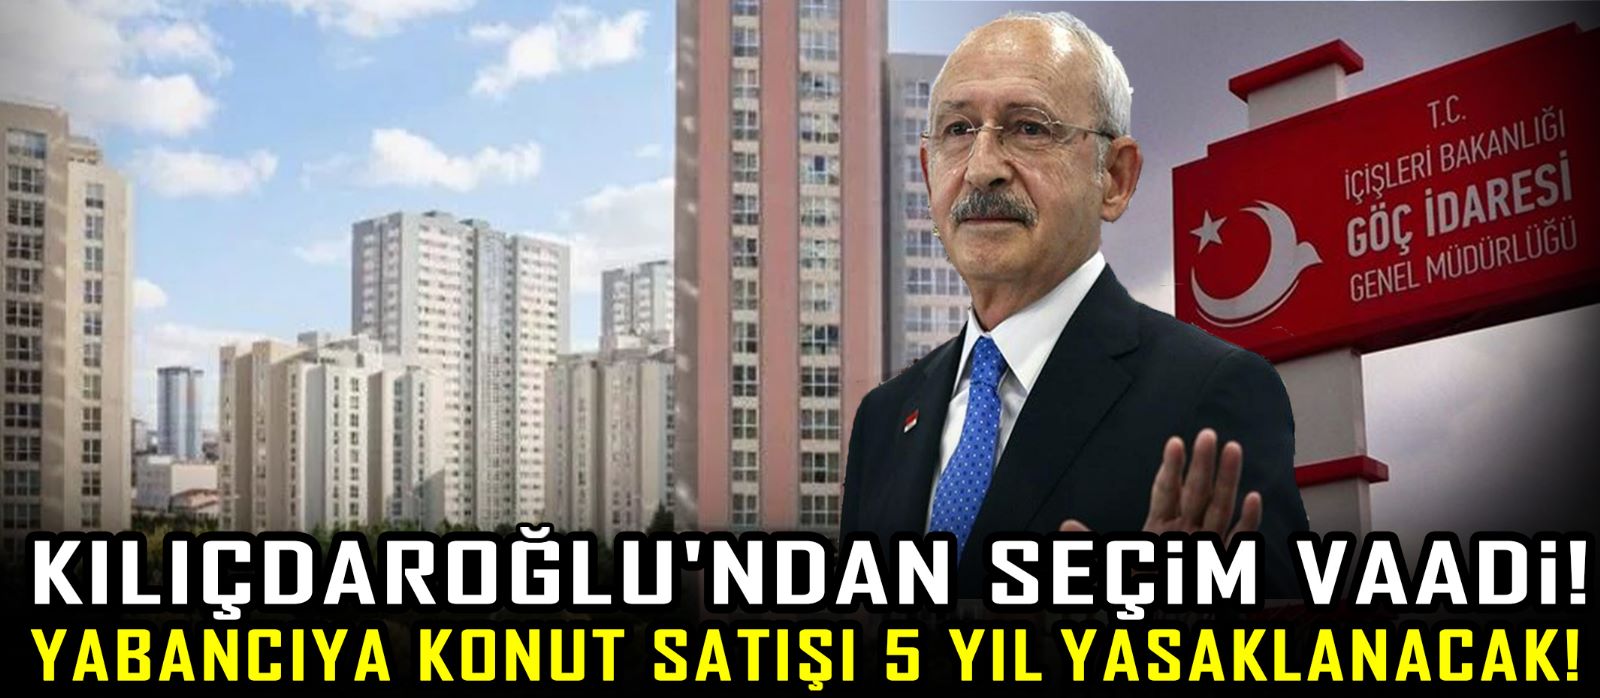 Kılıçdaroğlu'ndan seçim vaadi! Yabancıya konut satışı 5 yıl yasaklanacak!